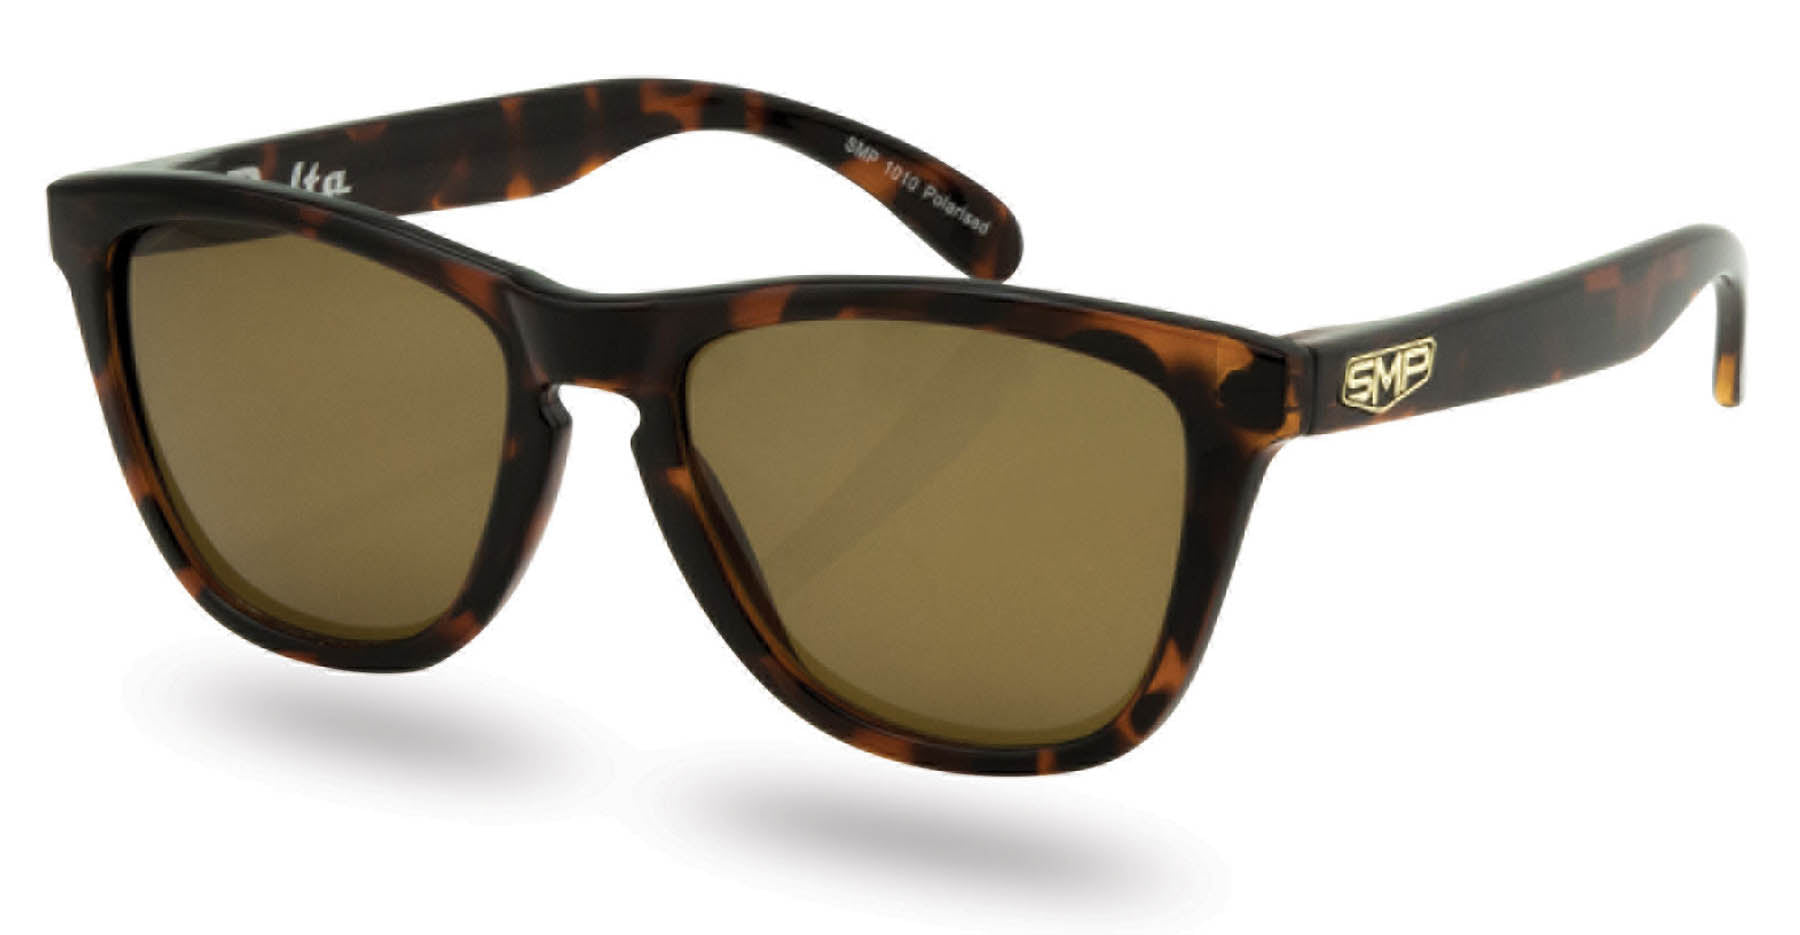 Delta Polarized Sunglasses - smpclothing